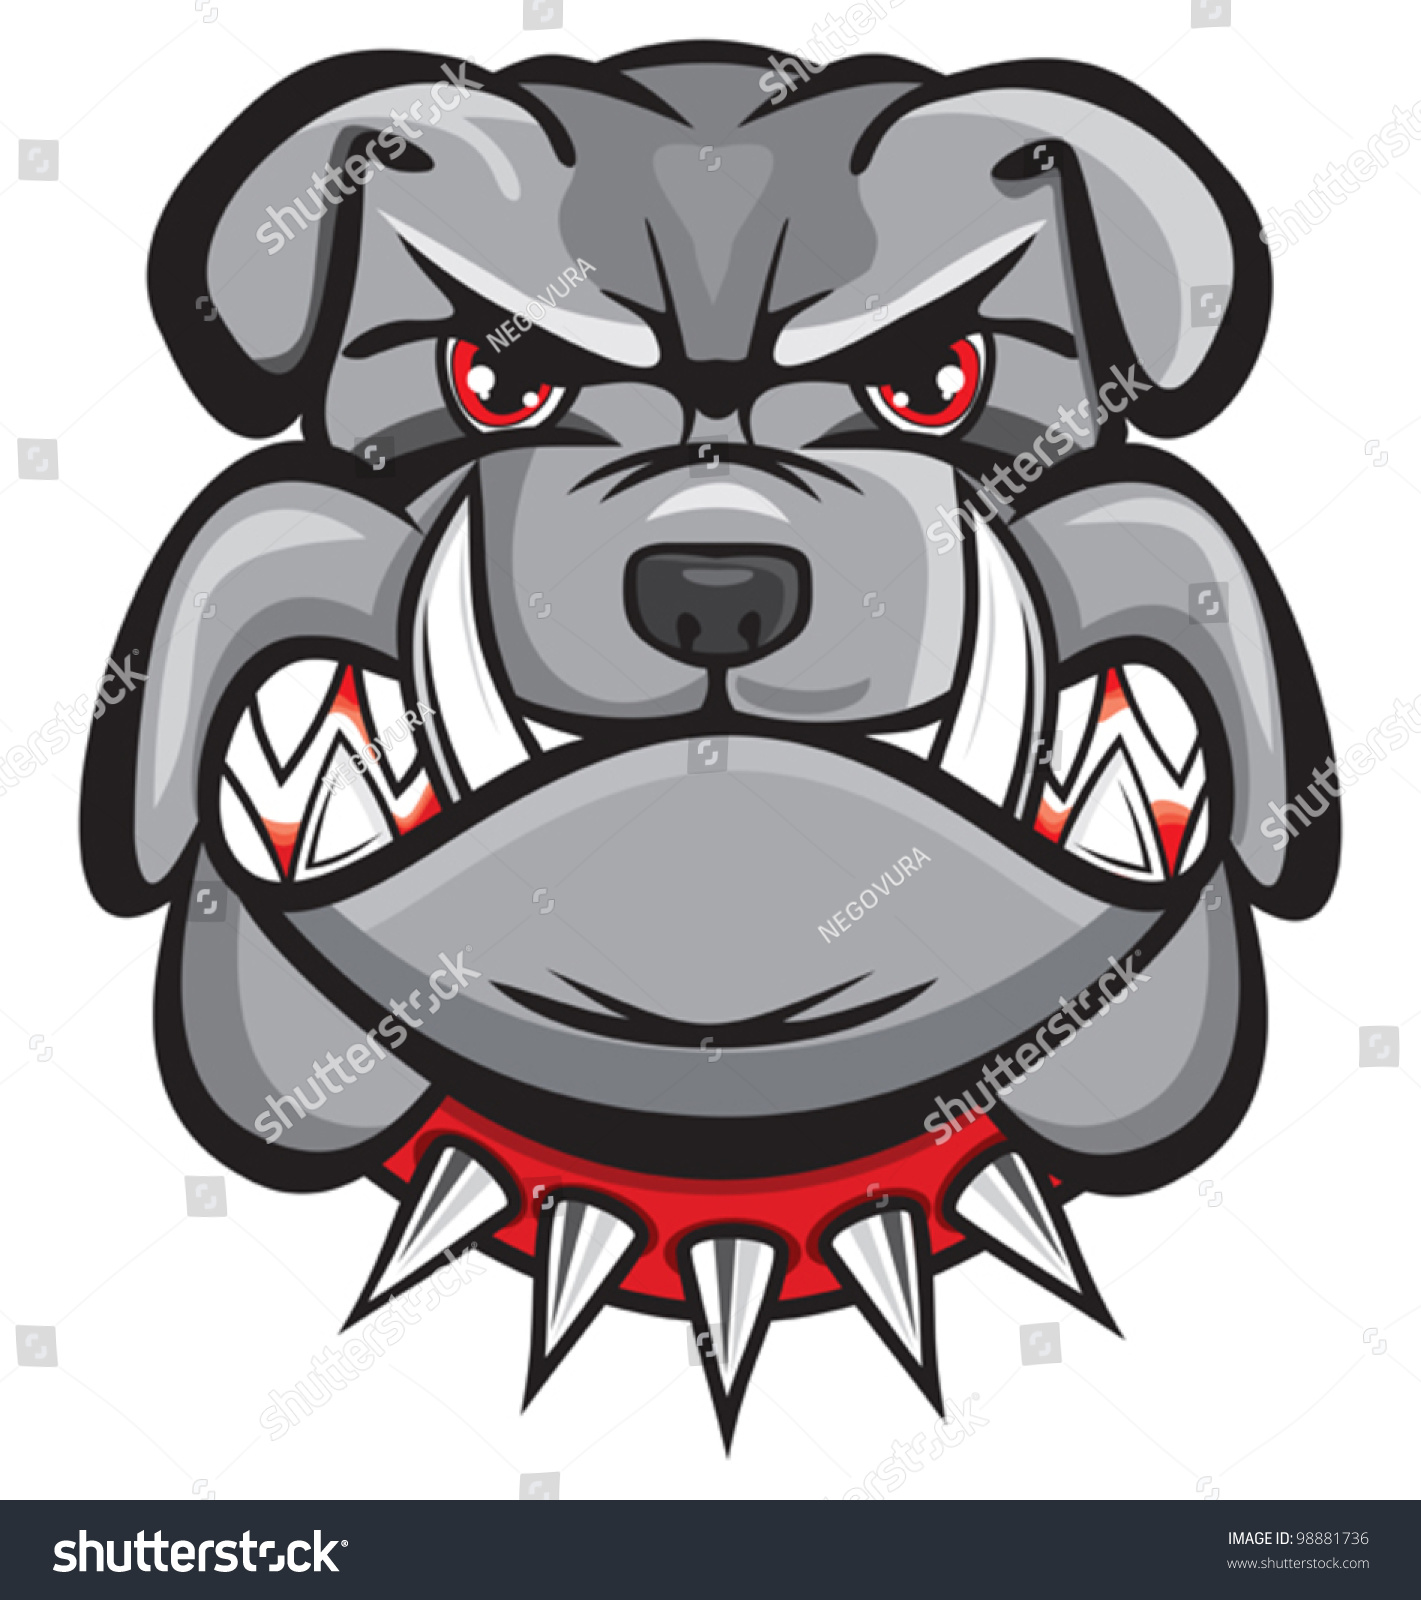 36+ Gambar kepala anjing bulldog kartun keren new